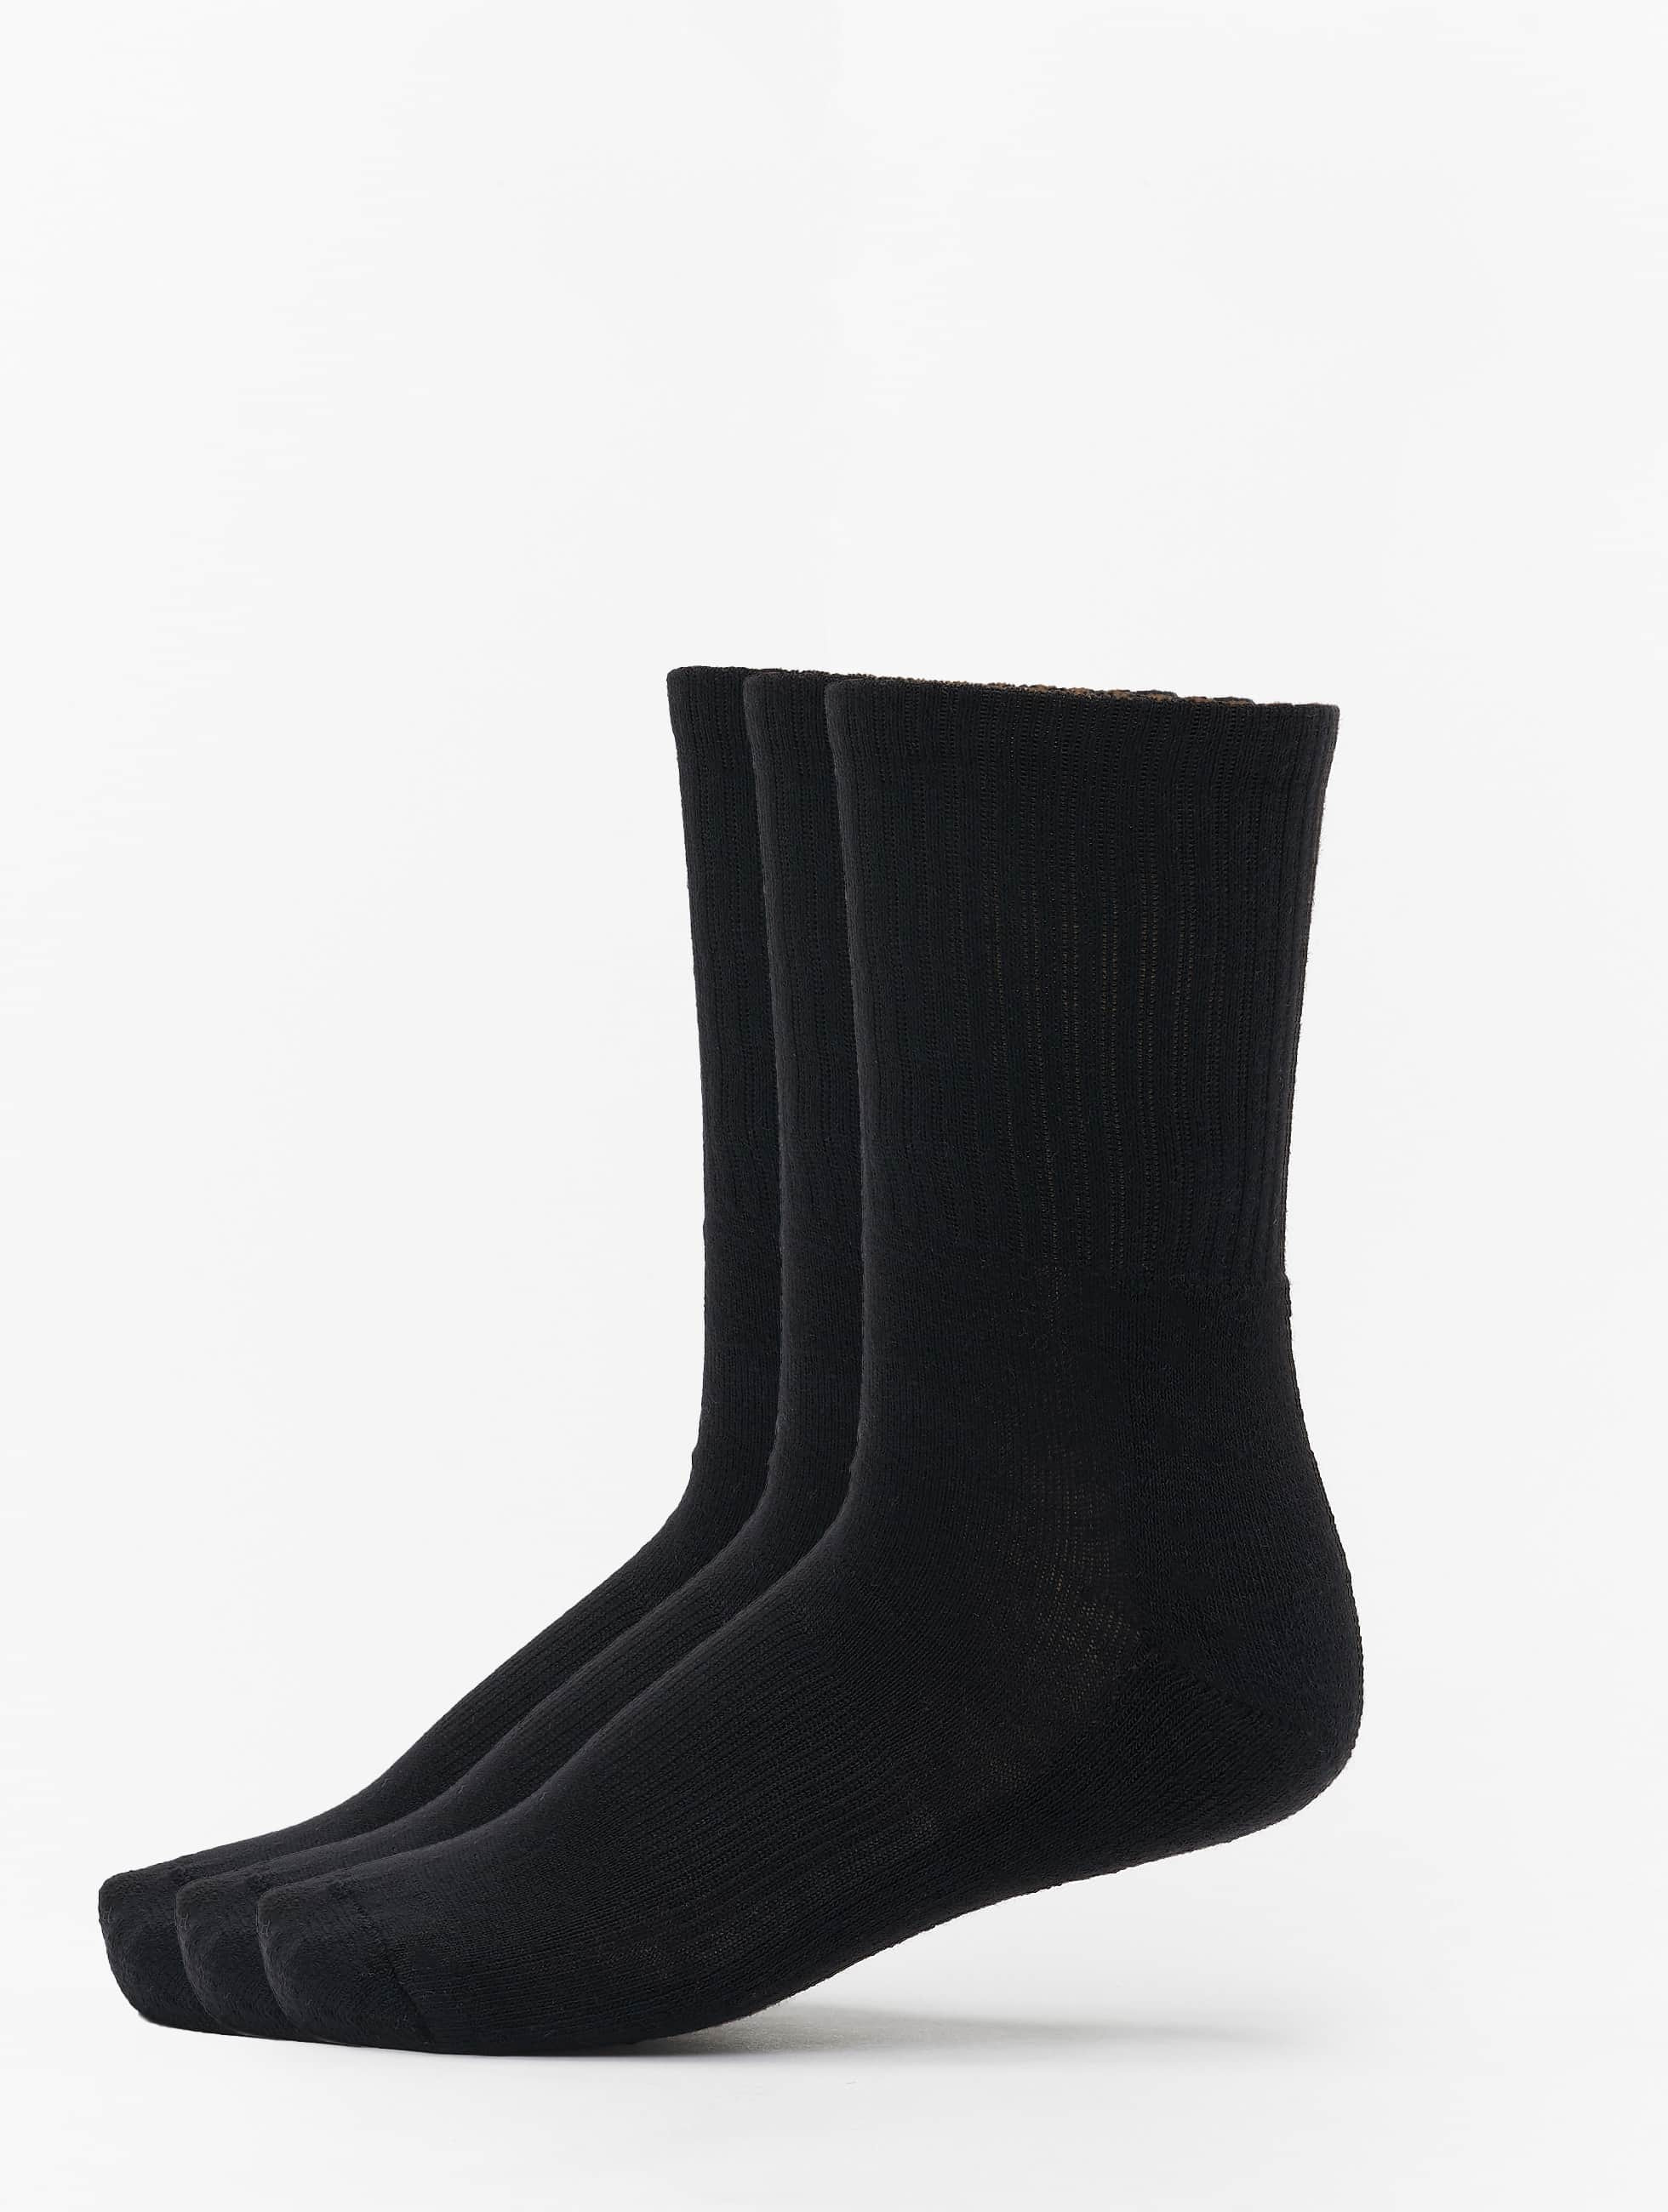 Bild von Urban Classics Männer,Frauen Socken 3-Pack Sport in schwarz